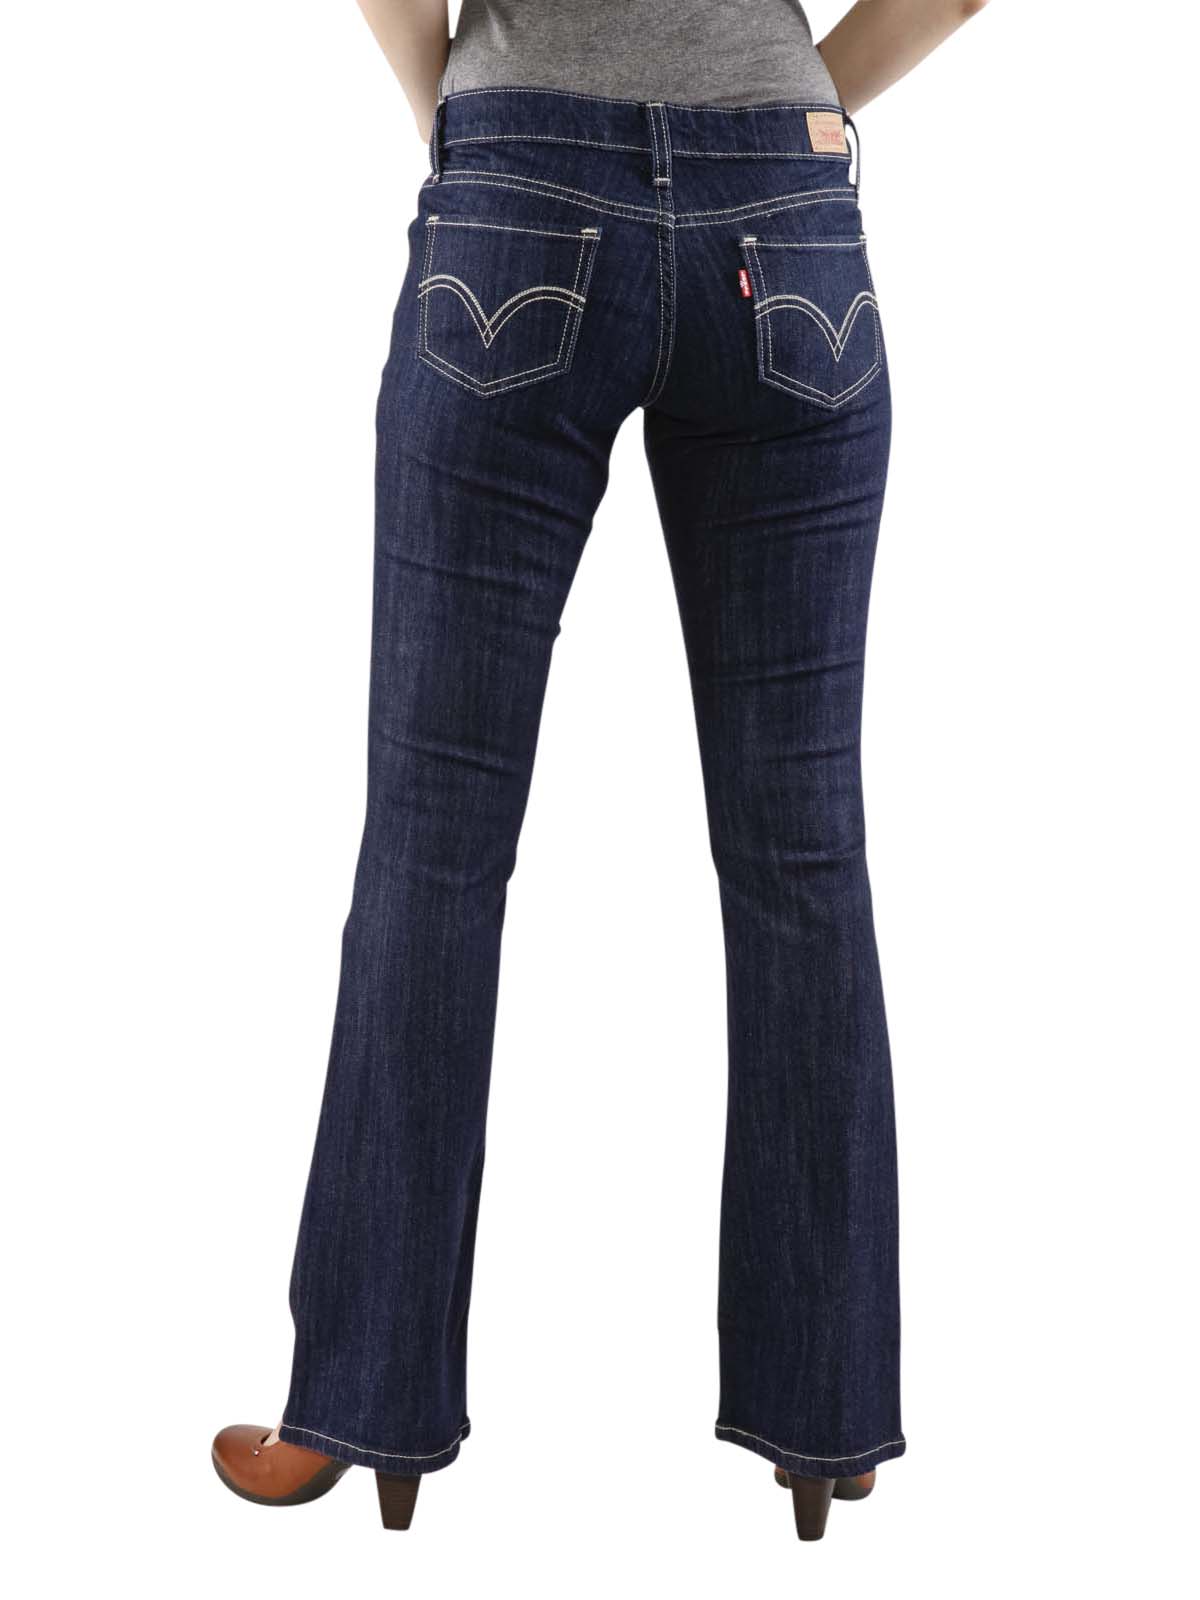 levis 518 jeans